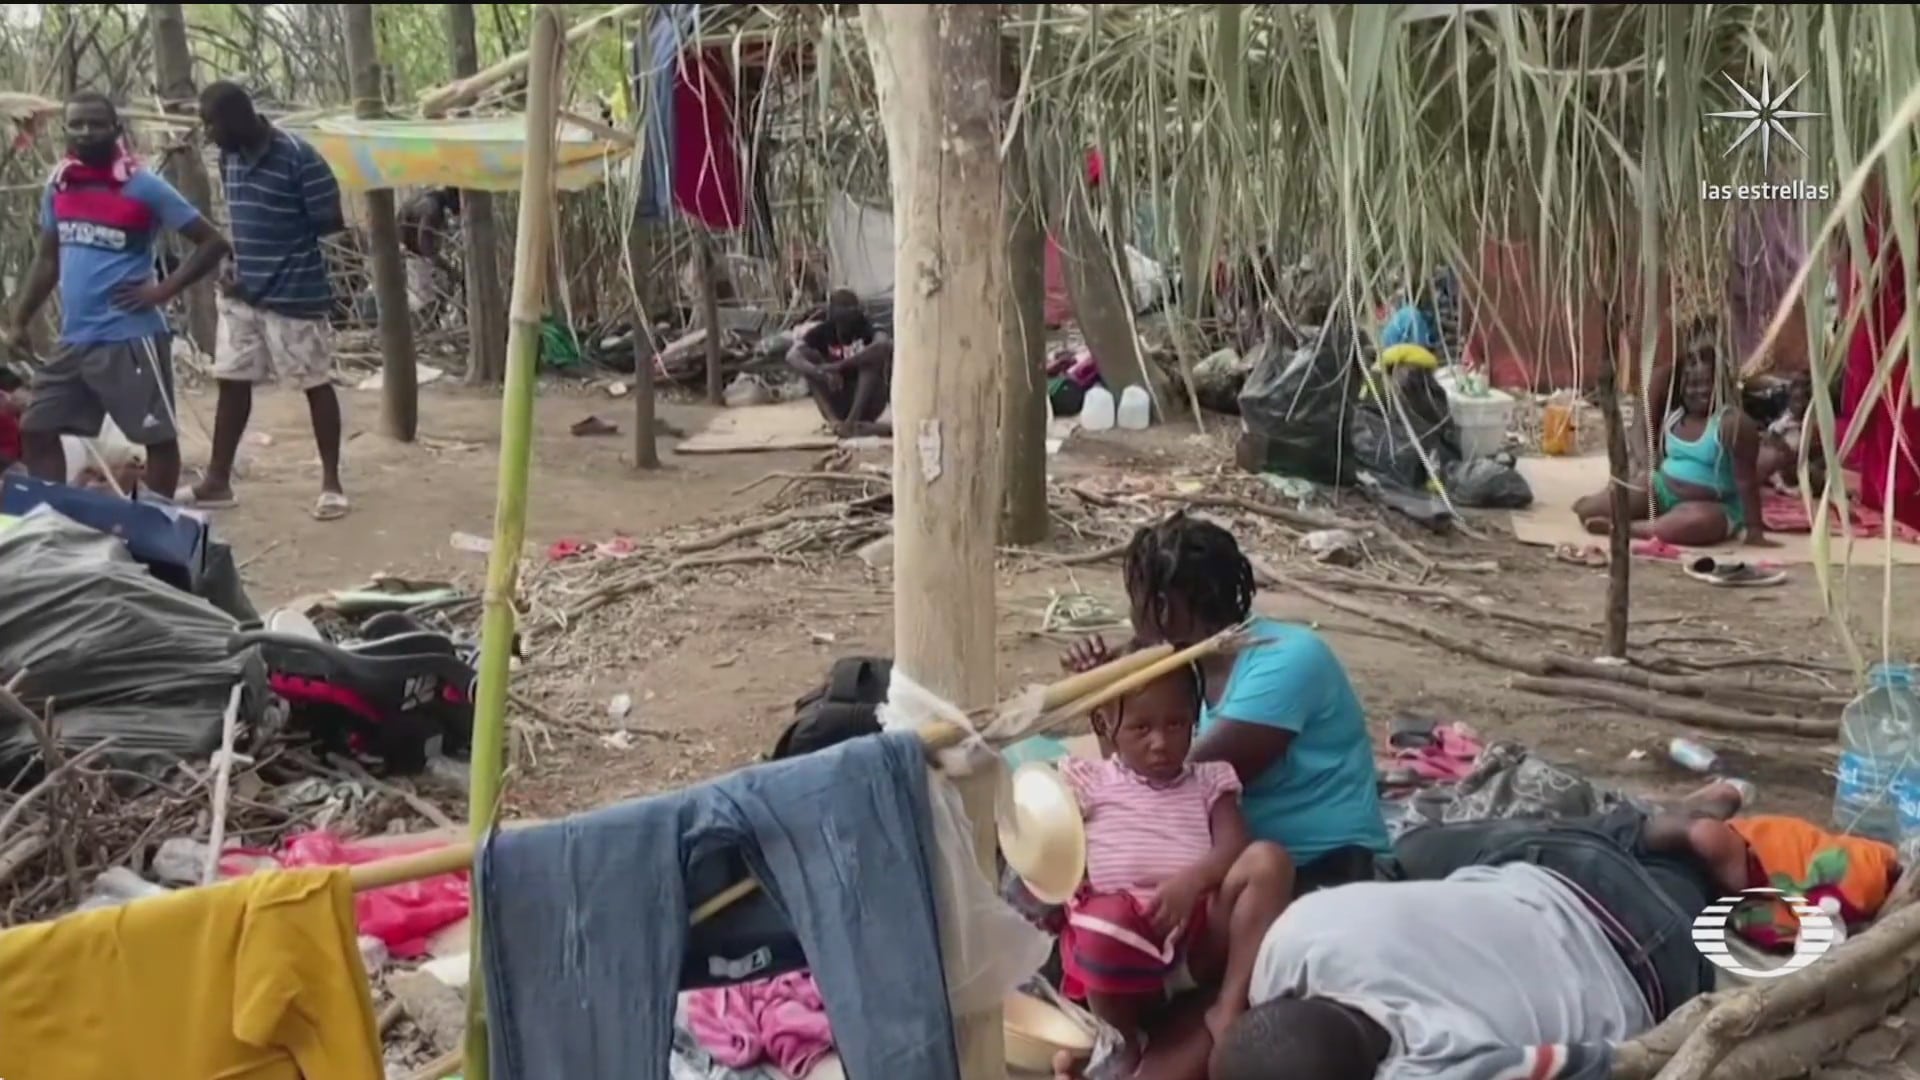 como se encuentra el campamento de migrantes haitianos ubicado en texas